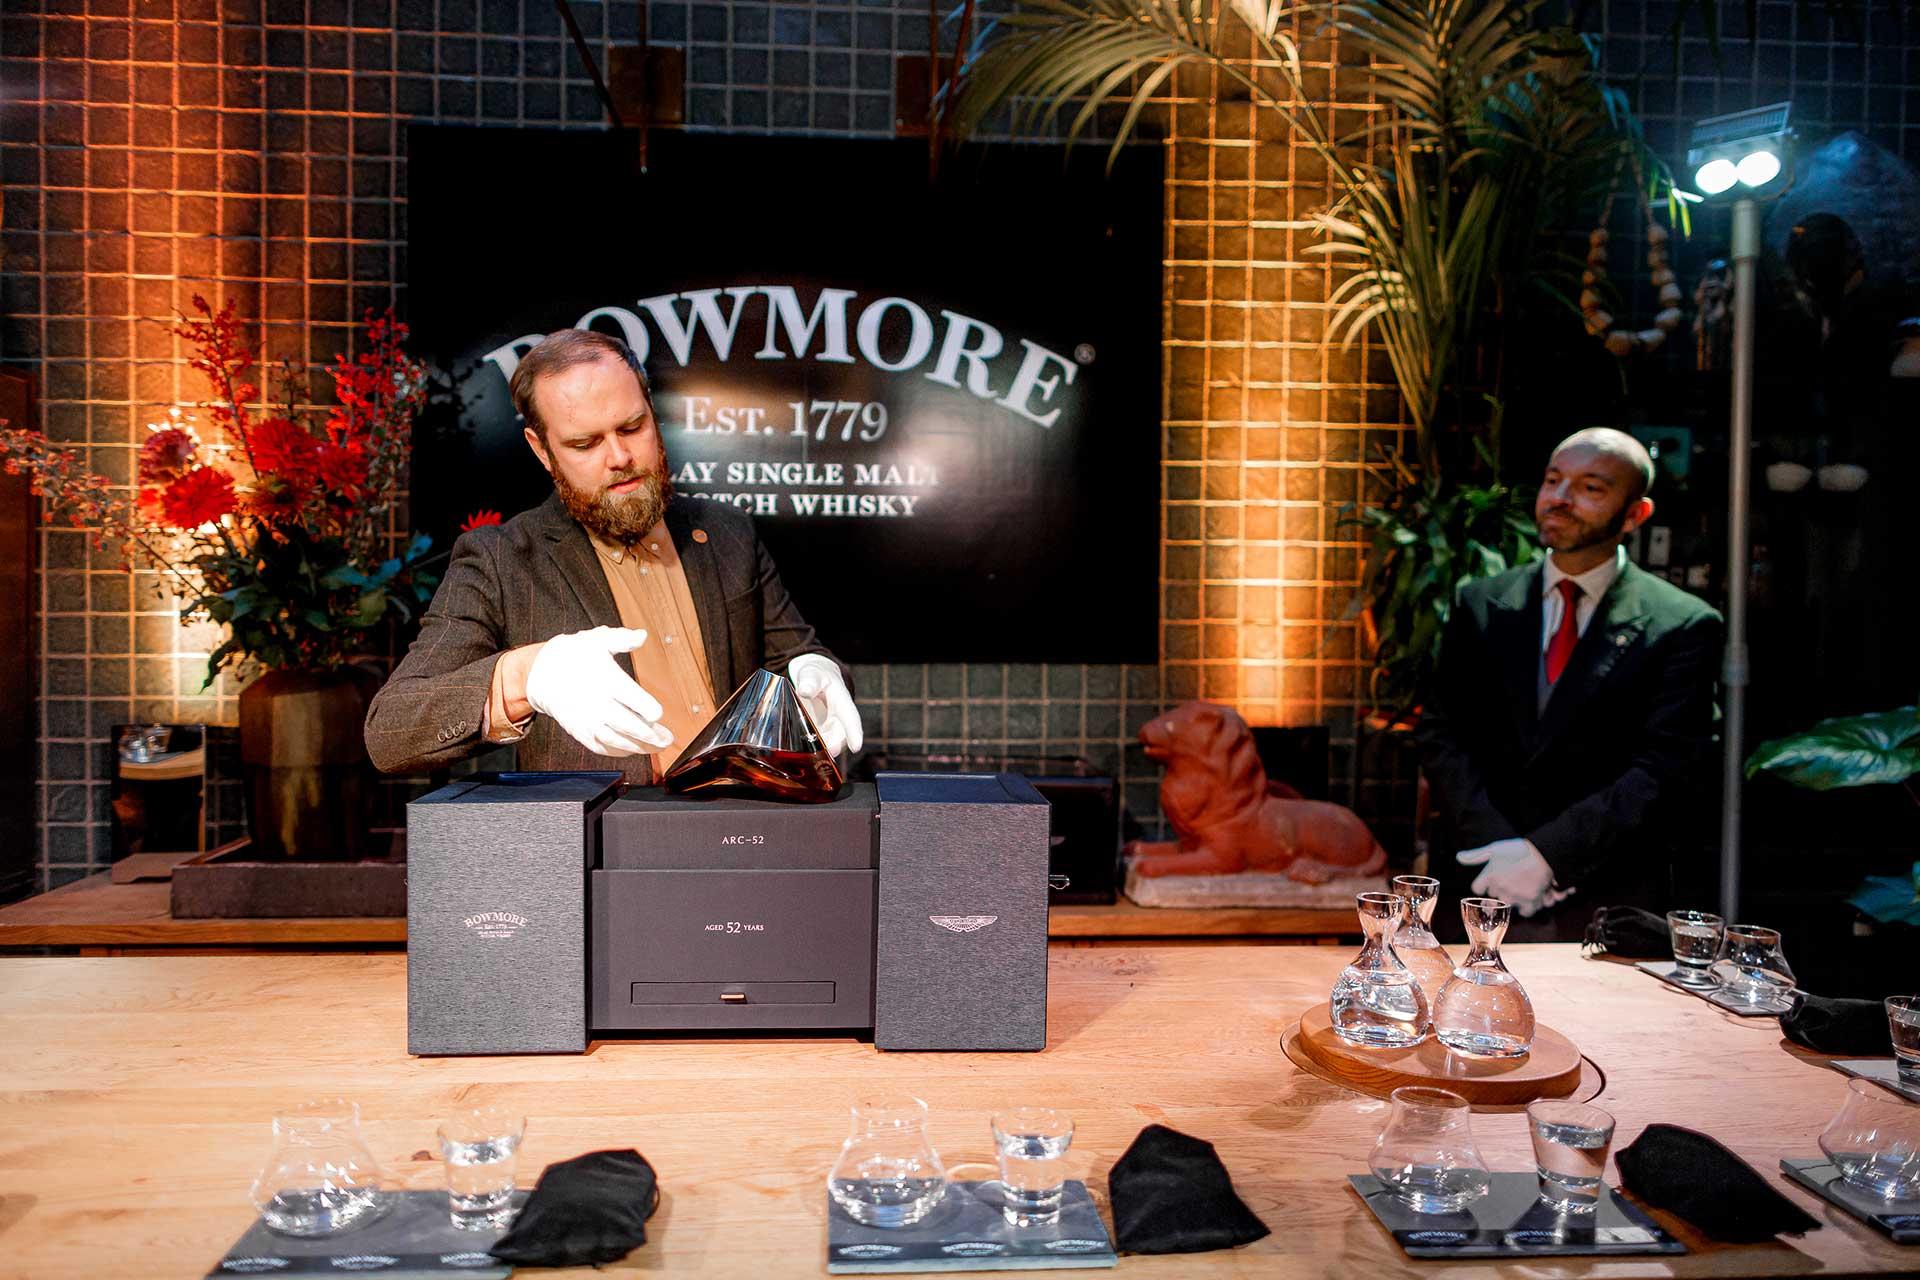 Bowmore ARC-52: zo smaakt een whisky van 80.000 euro